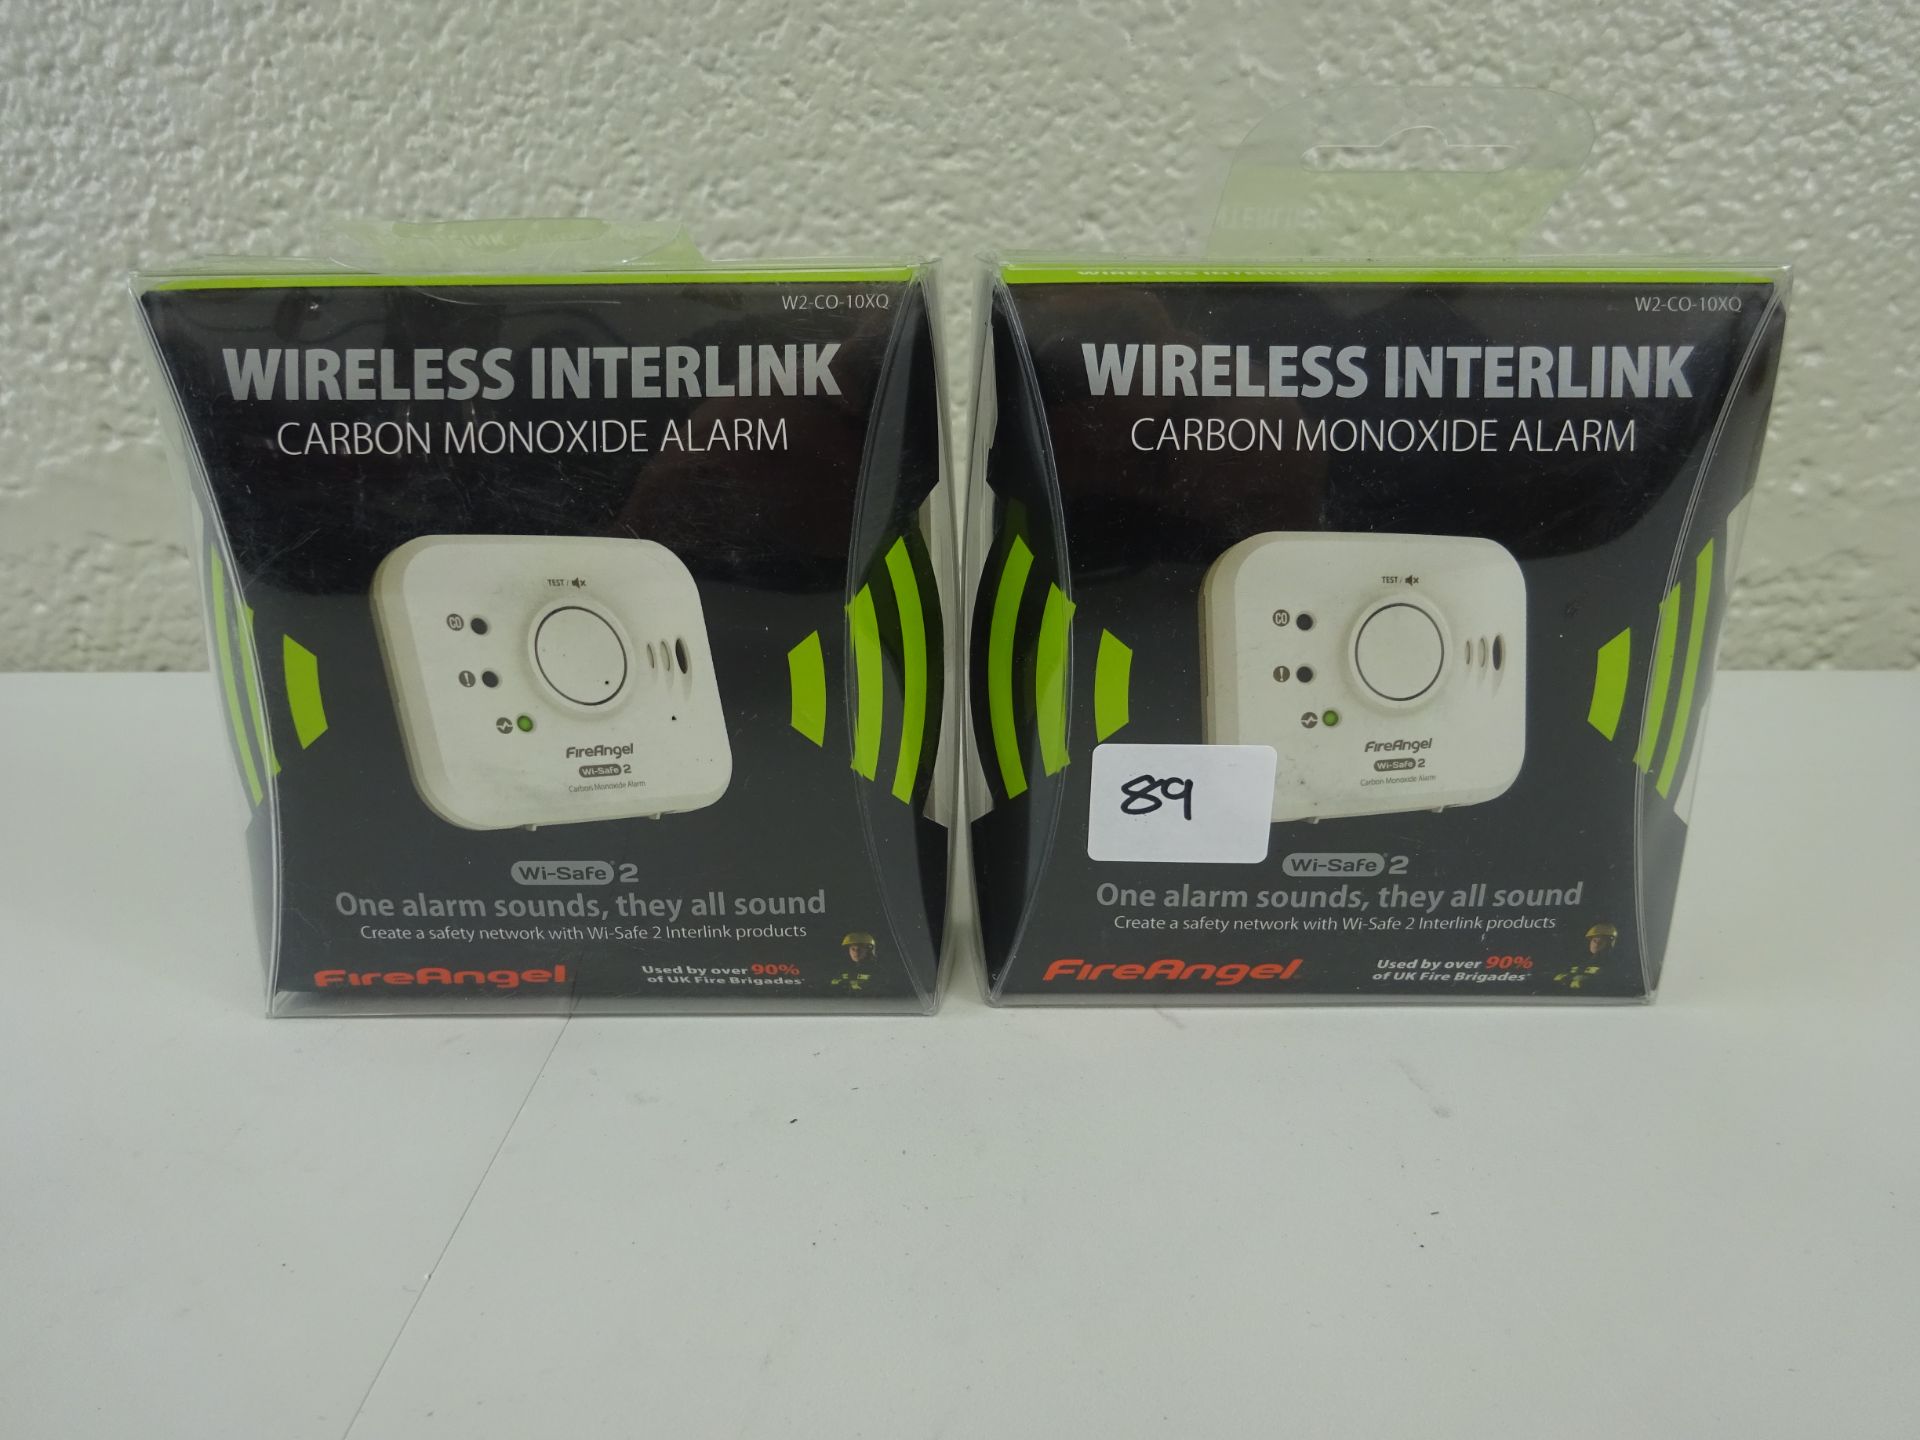 x 2 Fire angel wireless interlink carbon monoxide alarm - RRP £49.99 each